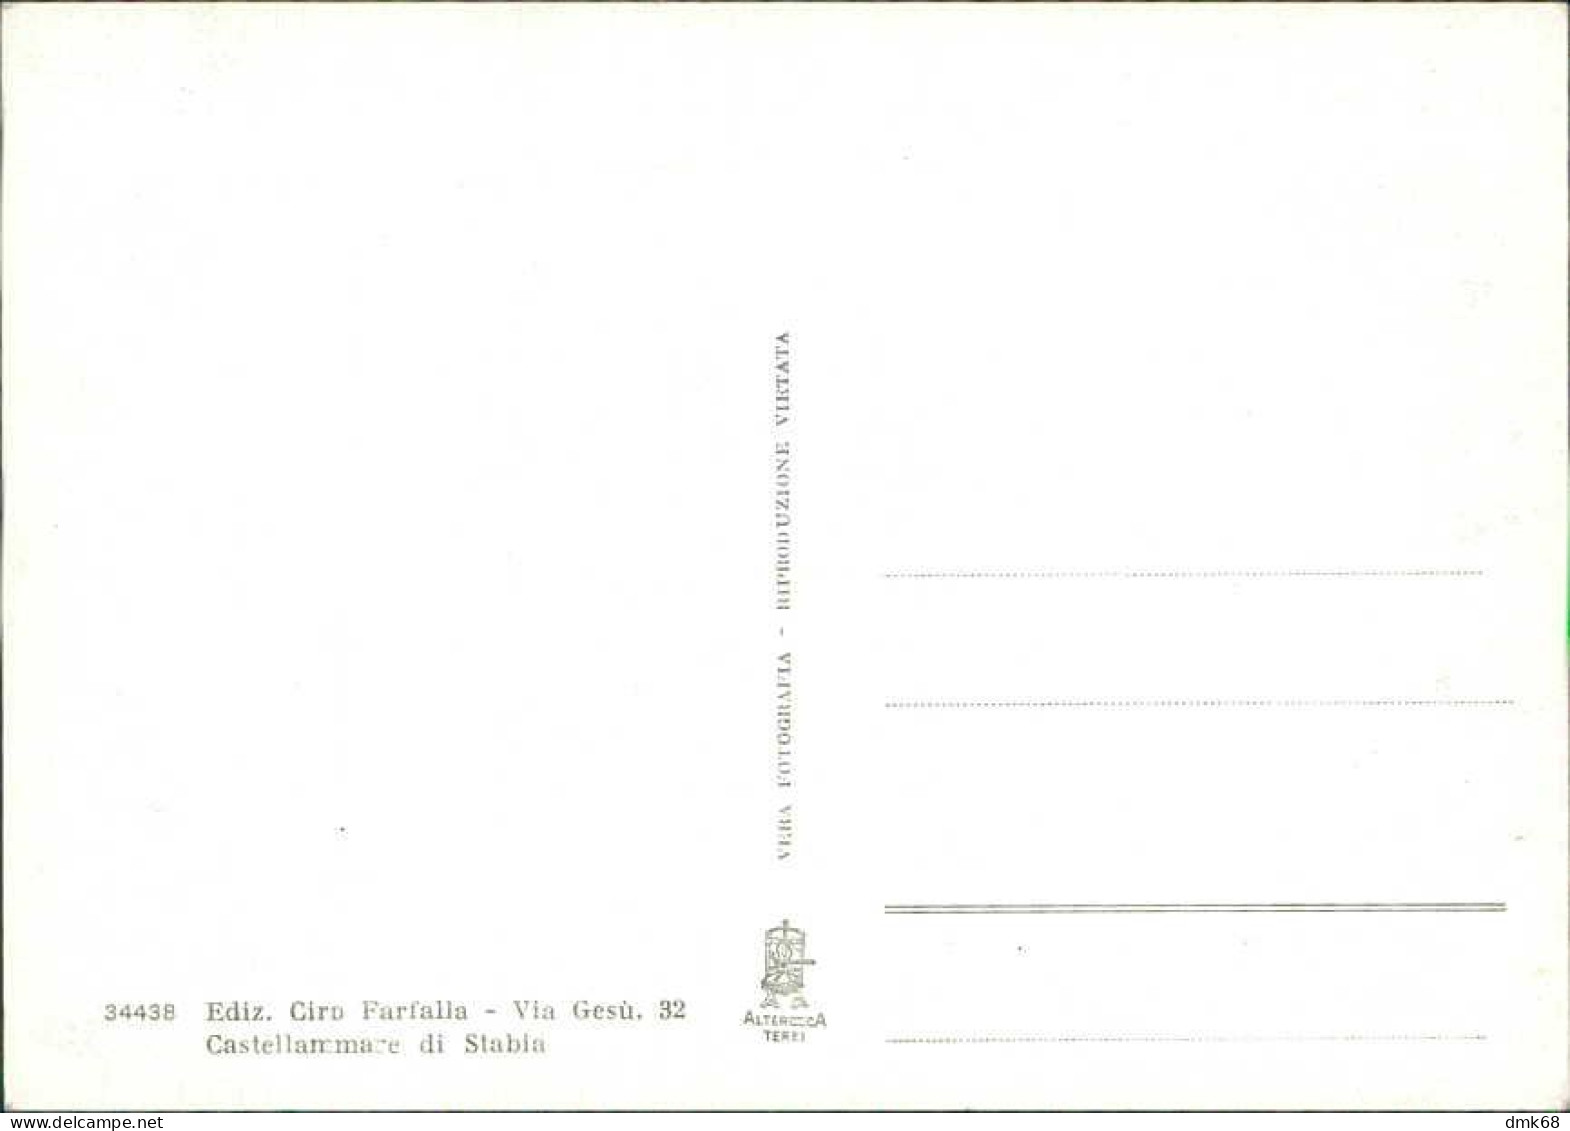 CASTELLAMMARE DI STABIA - VIALI DI QUISISANA - EDIZIONE FARFALLA - 1950s/60s (19863) - Castellammare Di Stabia